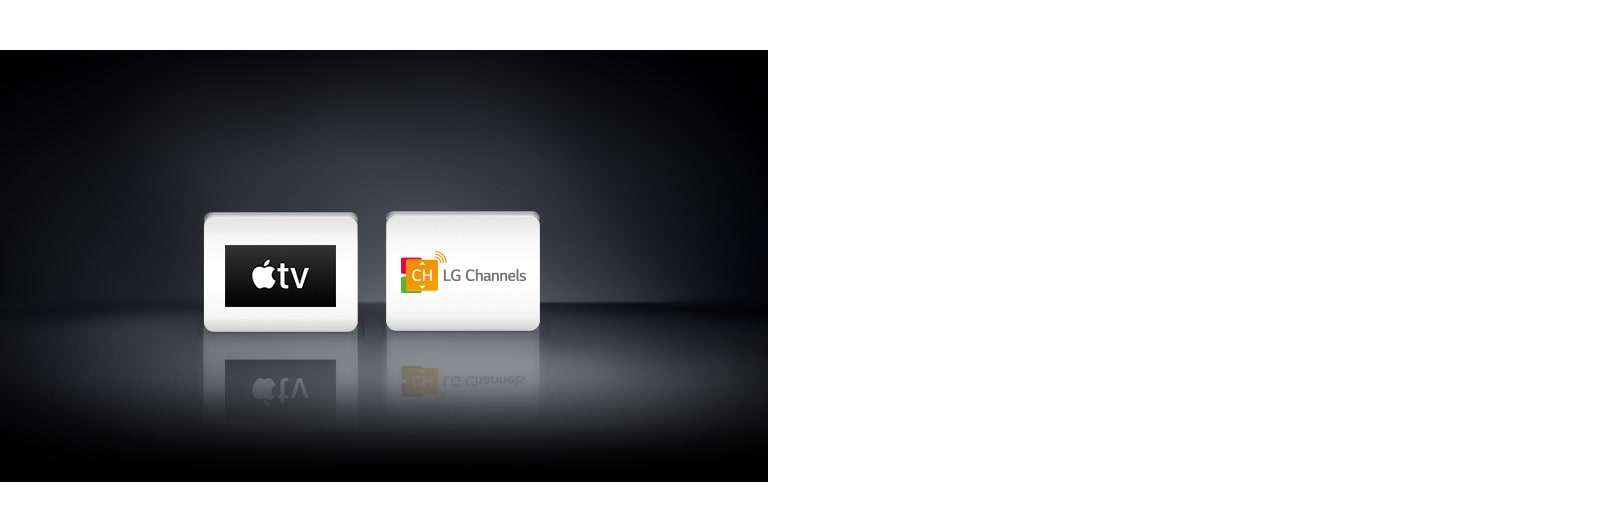 Два логотипа: Apple TV и LG Channels